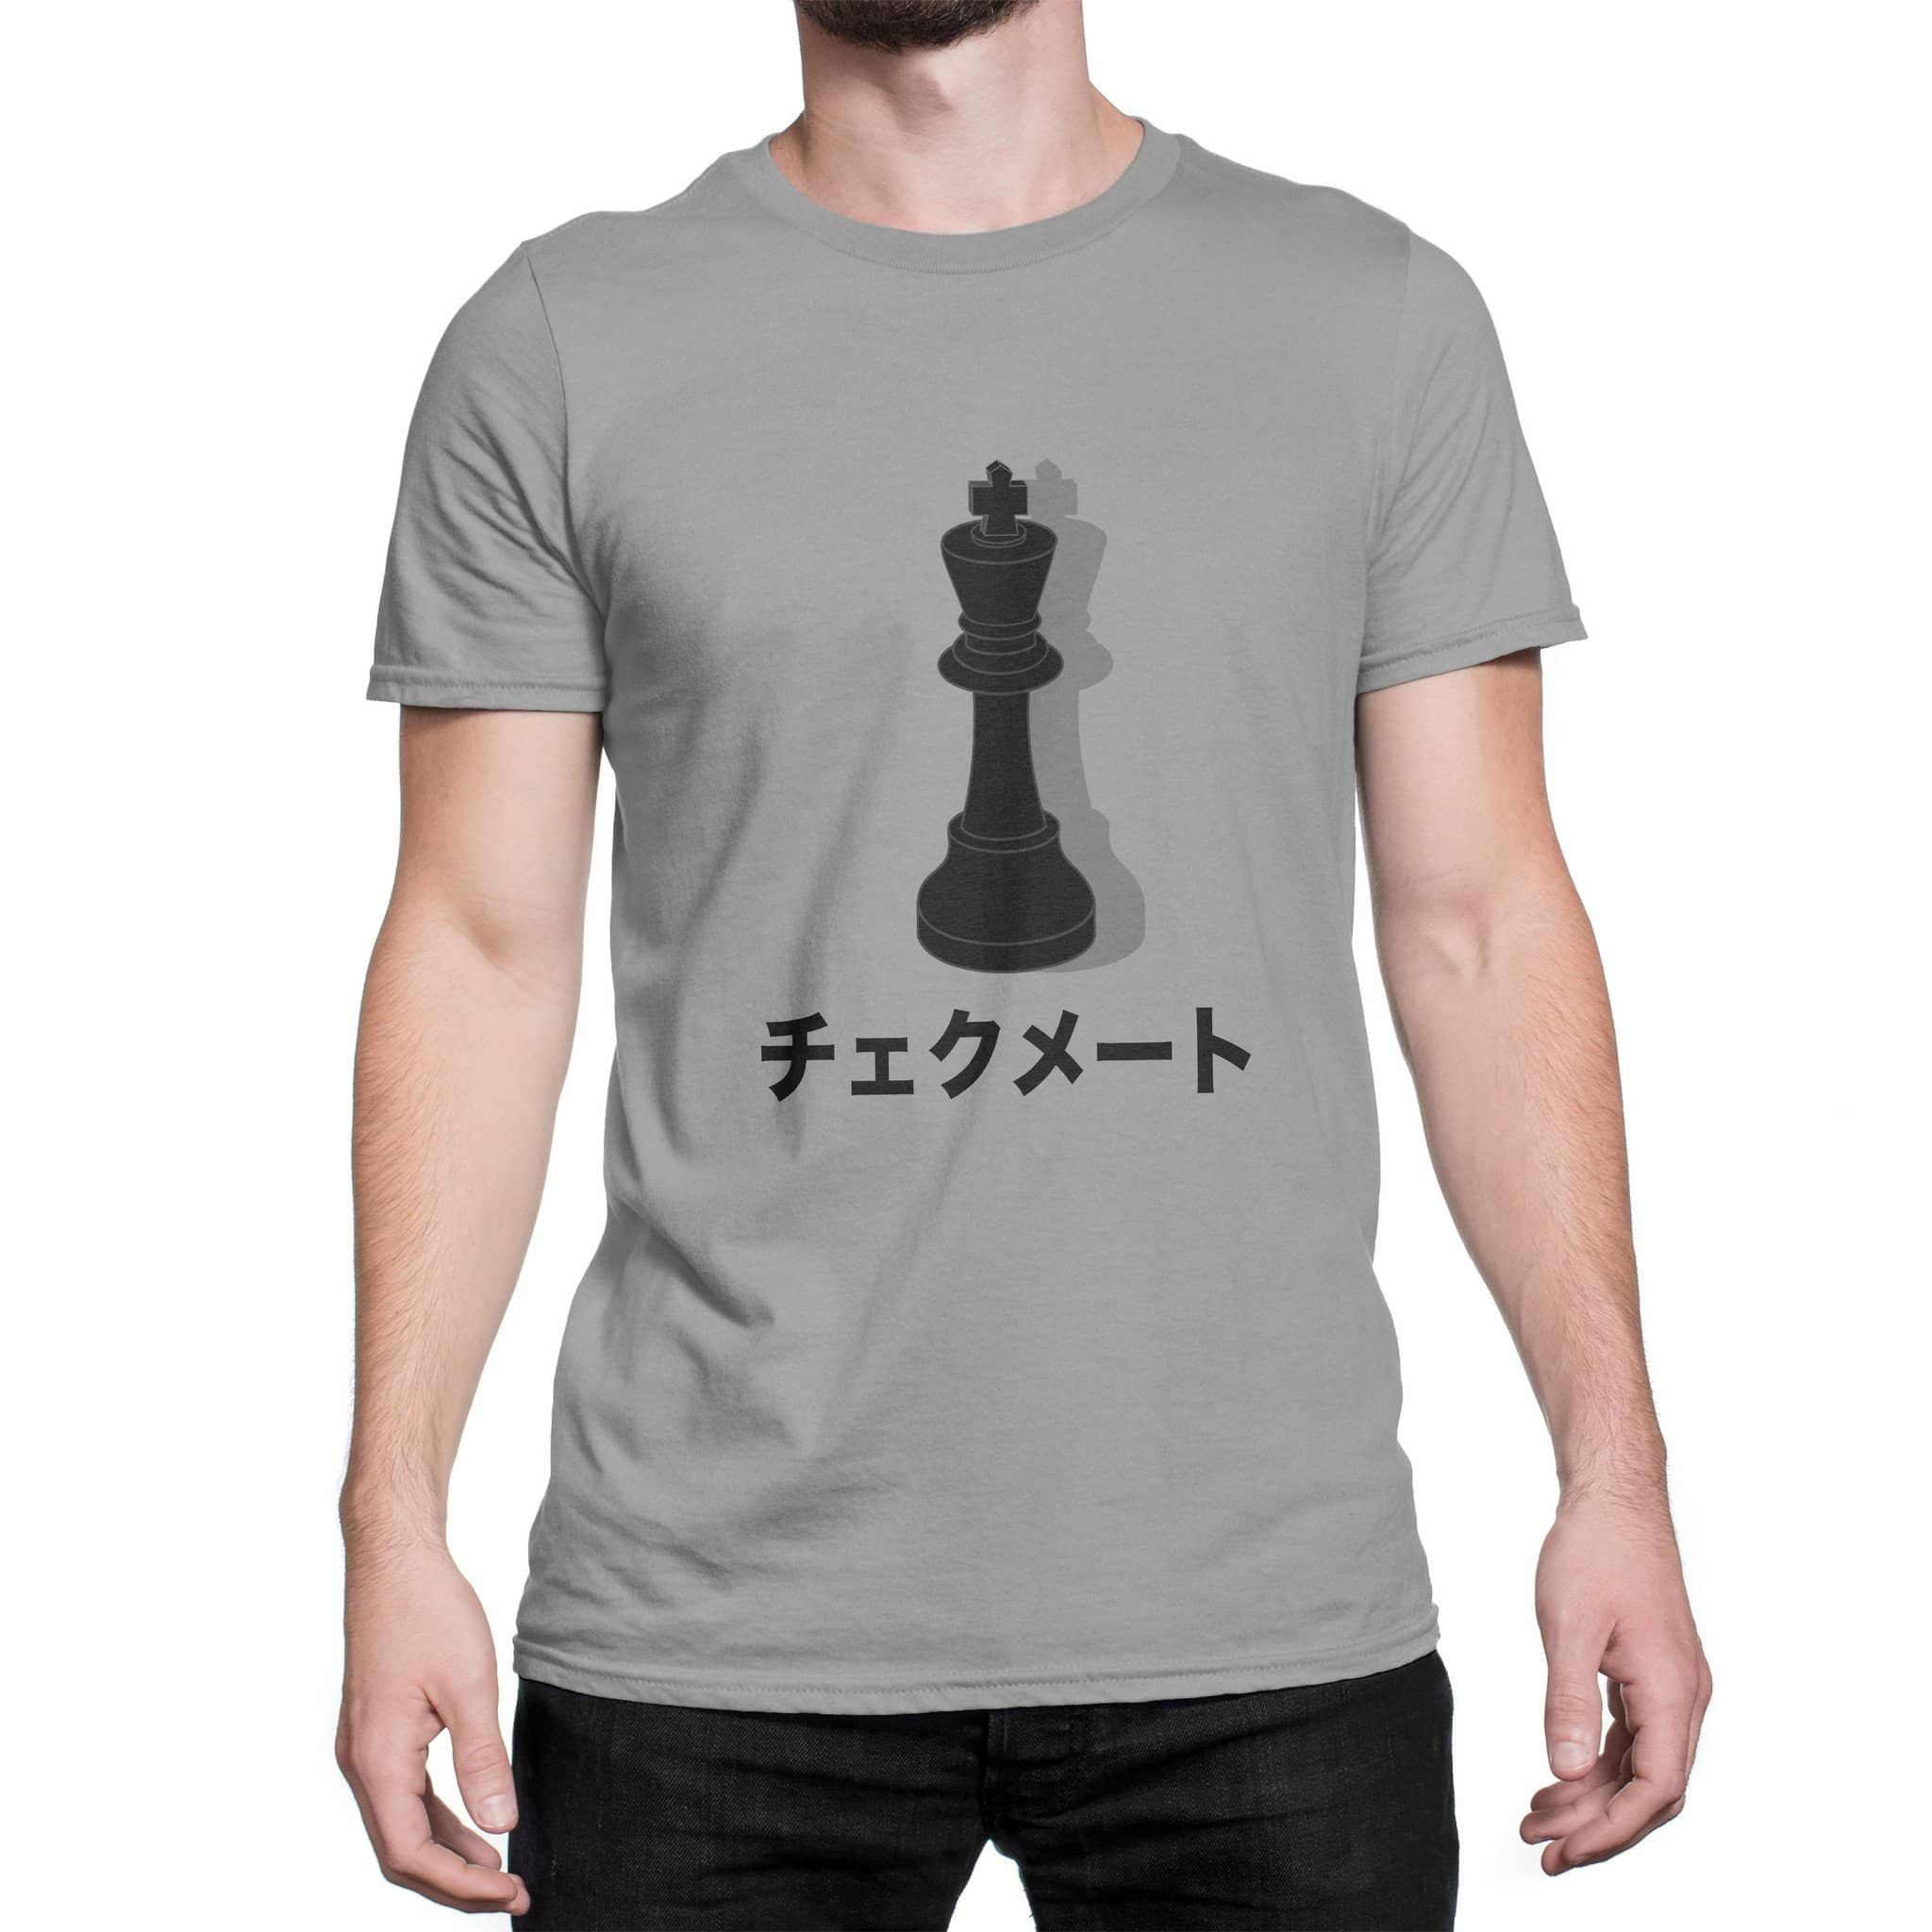 Japanese Chess T Shirt Gray Imouri